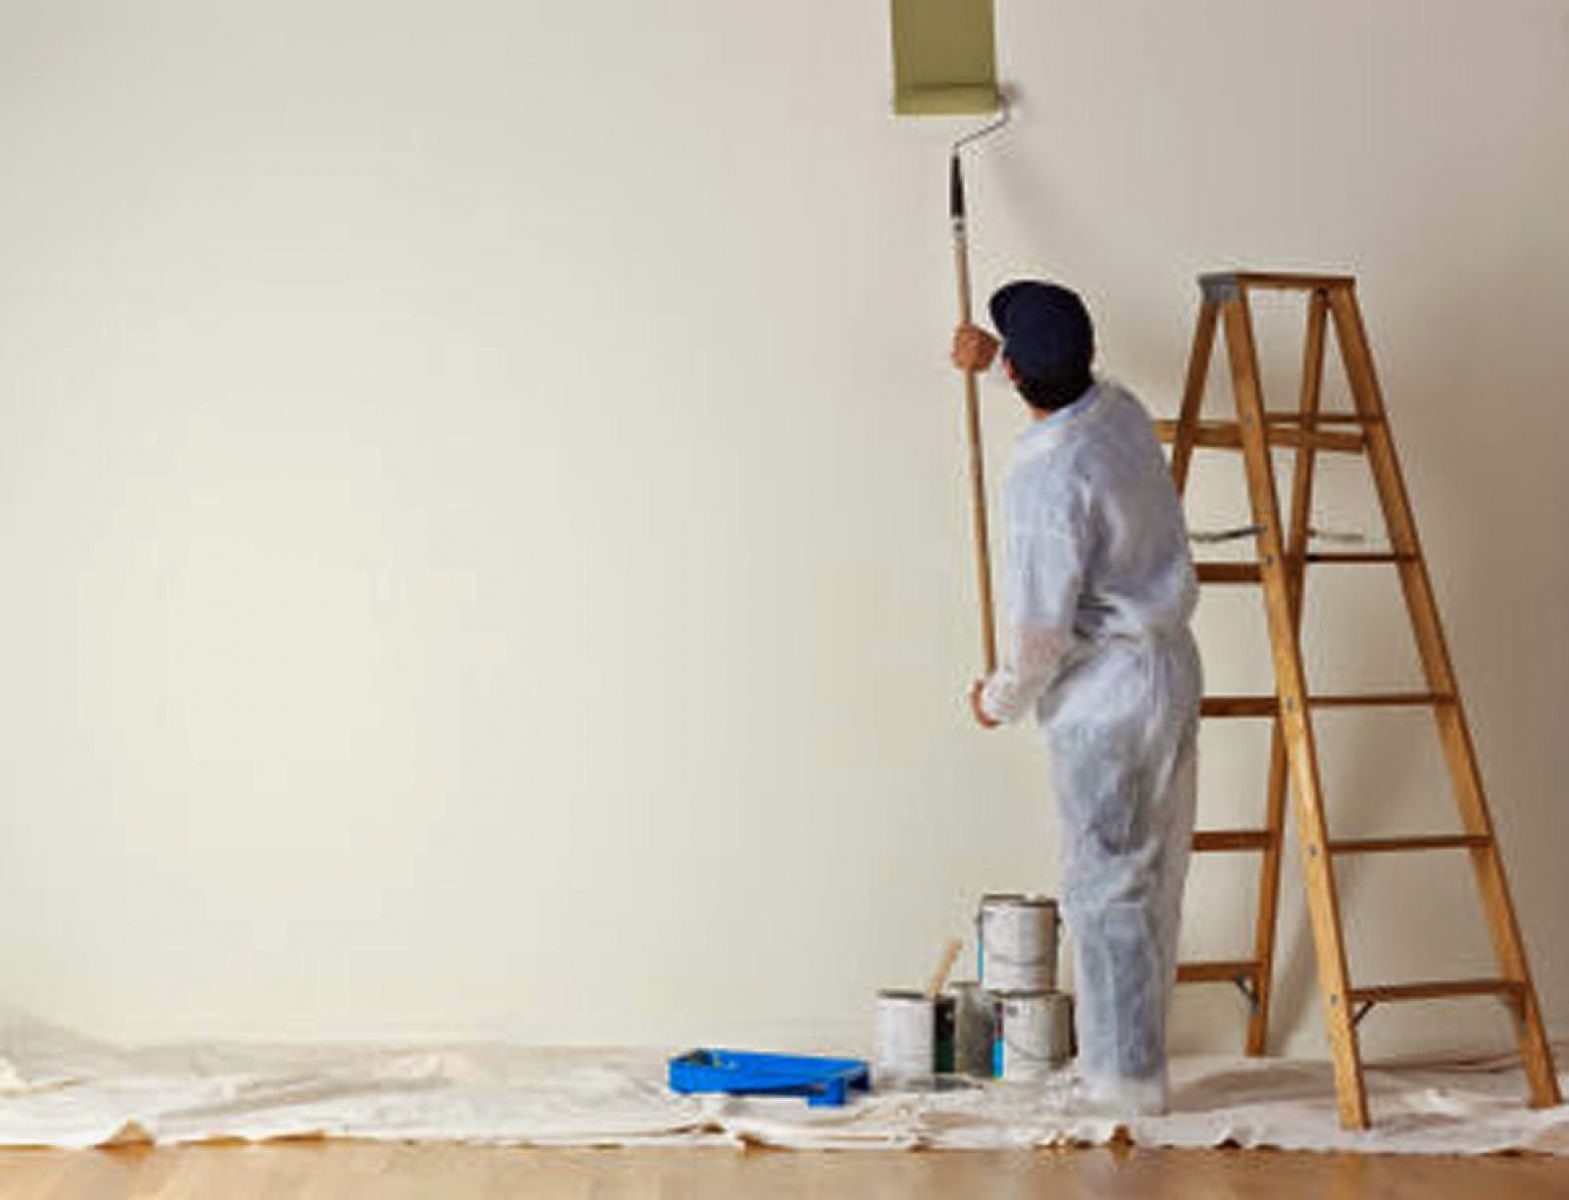 Cải thiện và bảo vệ ngôi nhà của bạn với dịch vụ sơn nhà uy tín tại HCM. Qua đó, bạn sẽ được tận hưởng một không gian sống đẹp và mới mẻ như chưa từng có.